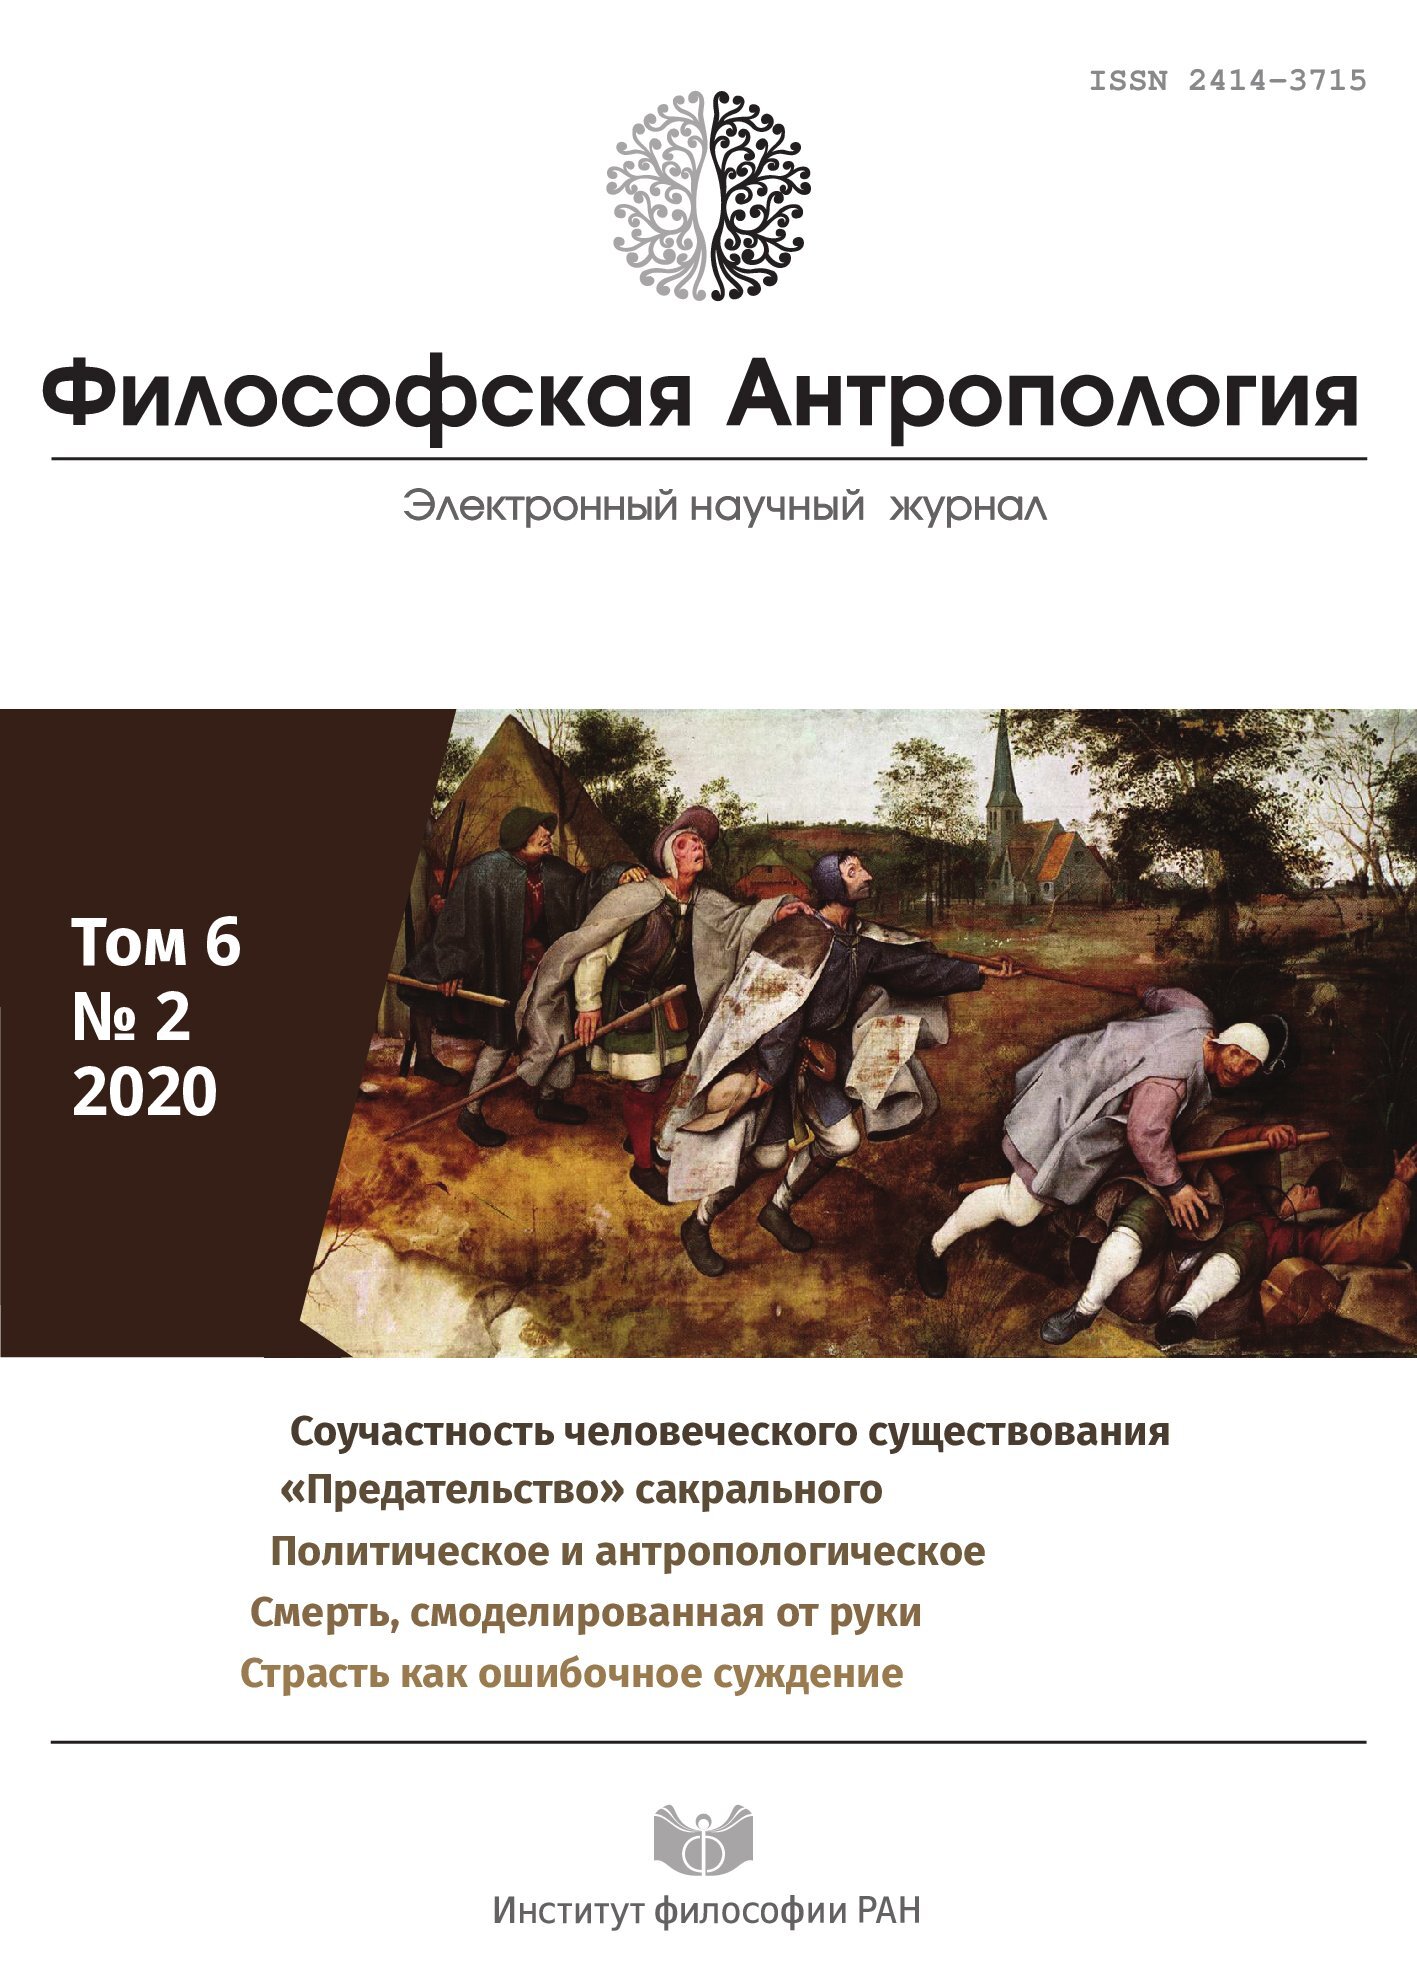 Философская антропология. 2020. Т. 6. № 2.